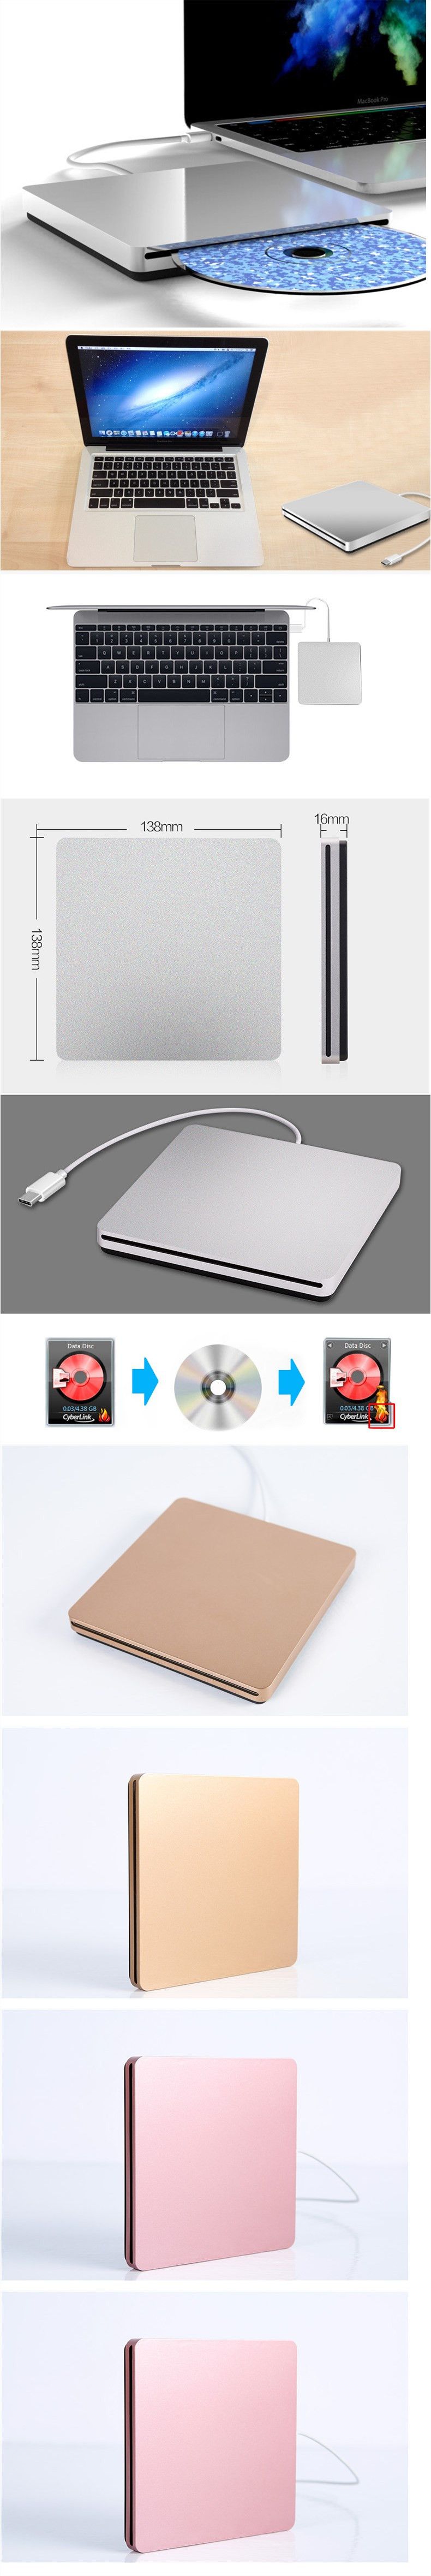 Type-C-External-DVD-Burner-Ultra-thin-External-CDDVD-Player-Optical-Drive-for-PC-Laptop-Windows-1537799